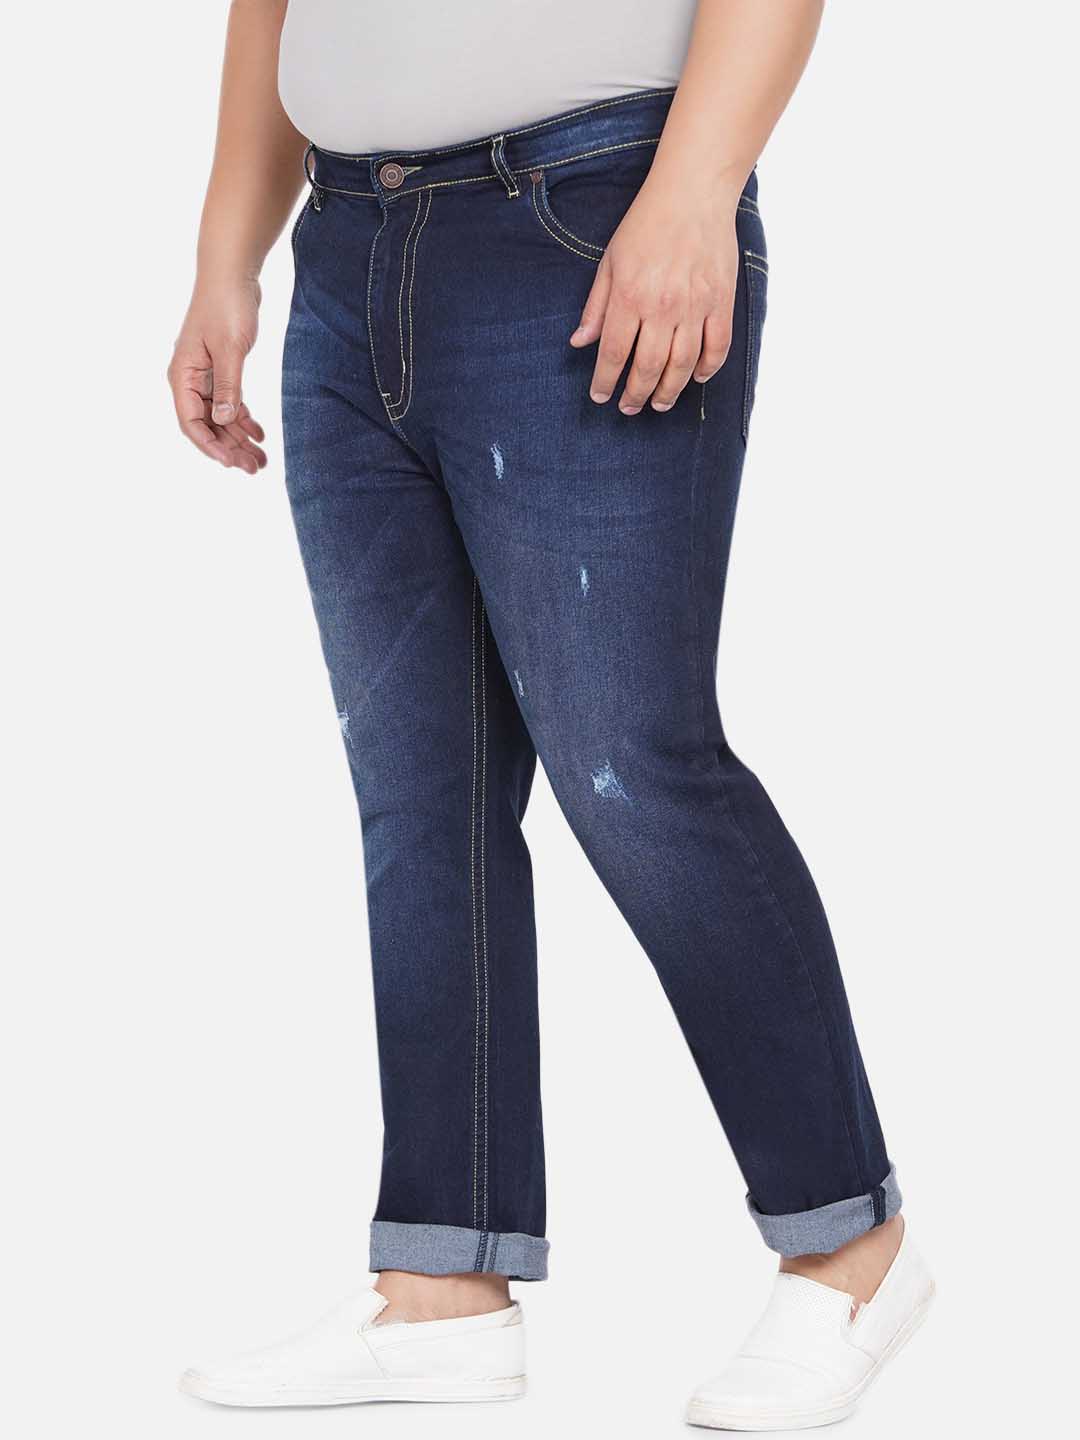 bottomwear/jeans/JPJ12234/jpj12234-4.jpg